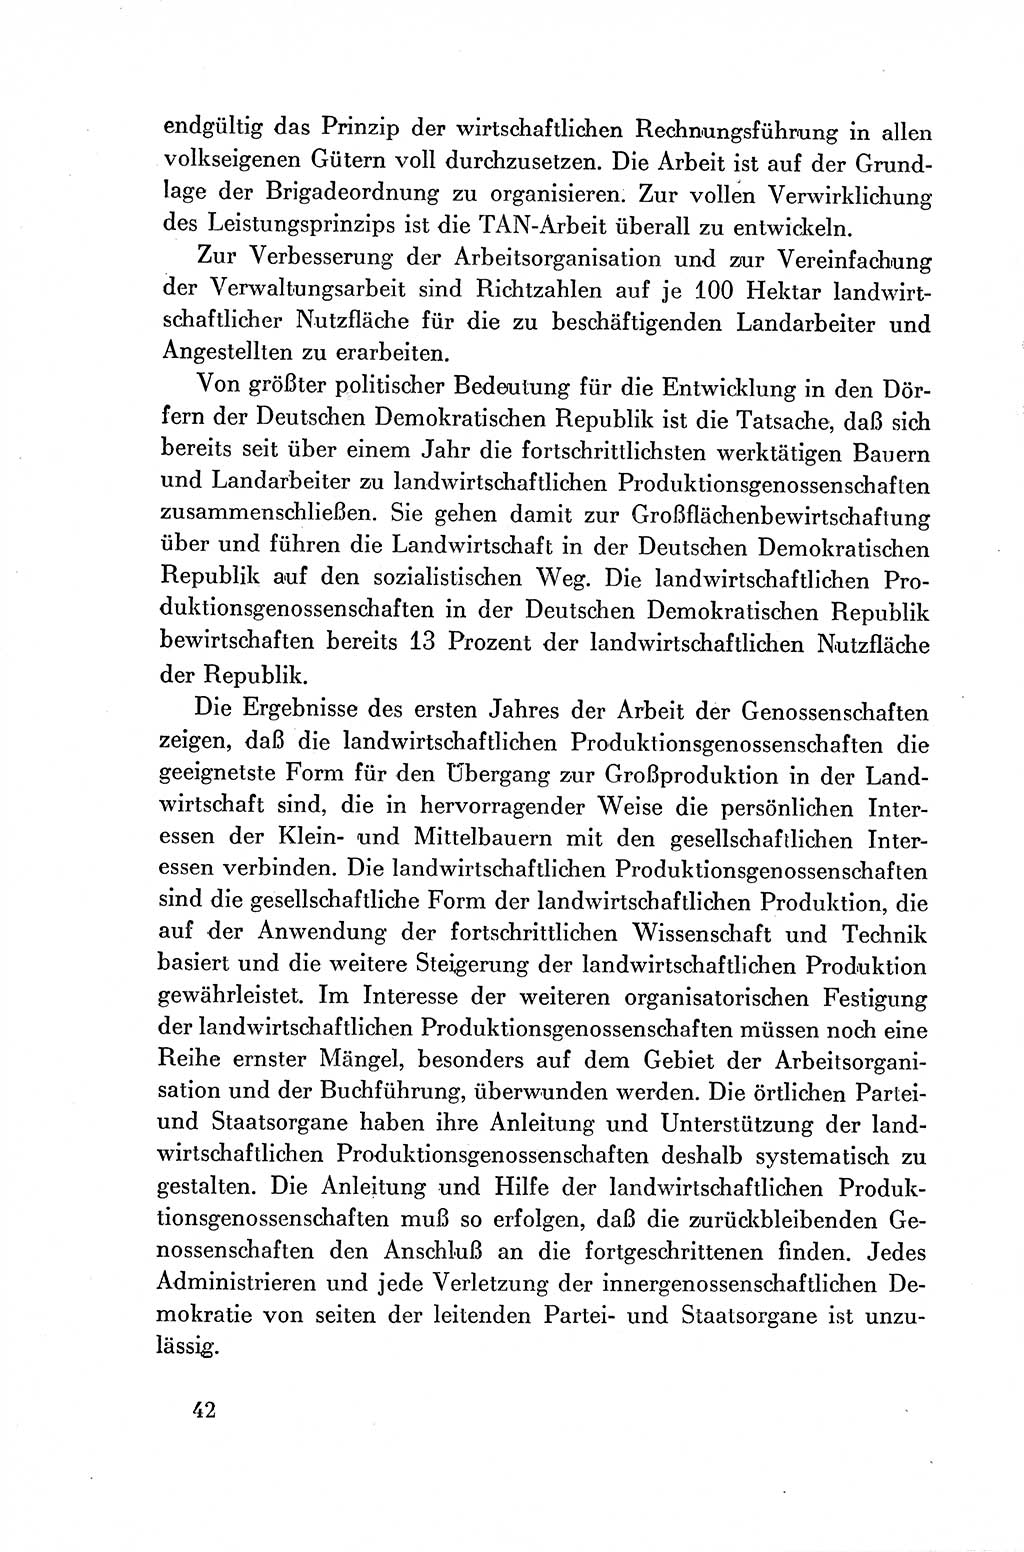 Dokumente der Sozialistischen Einheitspartei Deutschlands (SED) [Deutsche Demokratische Republik (DDR)] 1954-1955, Seite 42 (Dok. SED DDR 1954-1955, S. 42)